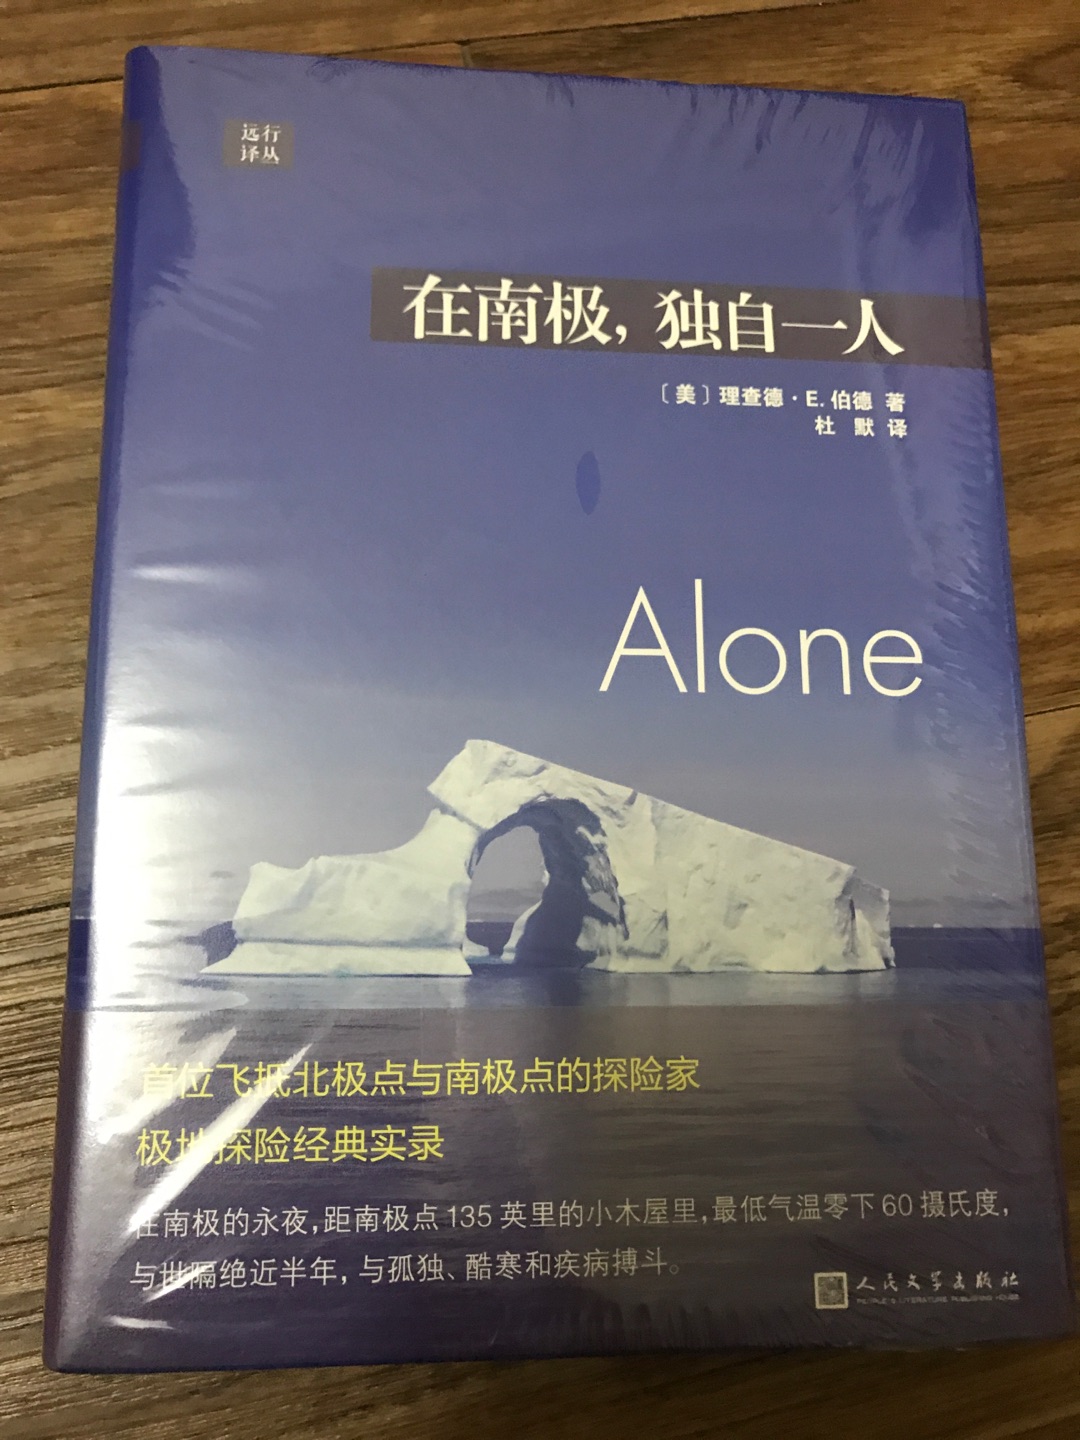 人民文学出版社出版的远行译丛系列之《在南极，独自一人》，读万卷书行万里路，既然没大块时间行万里路，只好读书啦。这套远行译丛非常不错，能了解很多地区的人文历史，跟着作者一起去畅游世界。